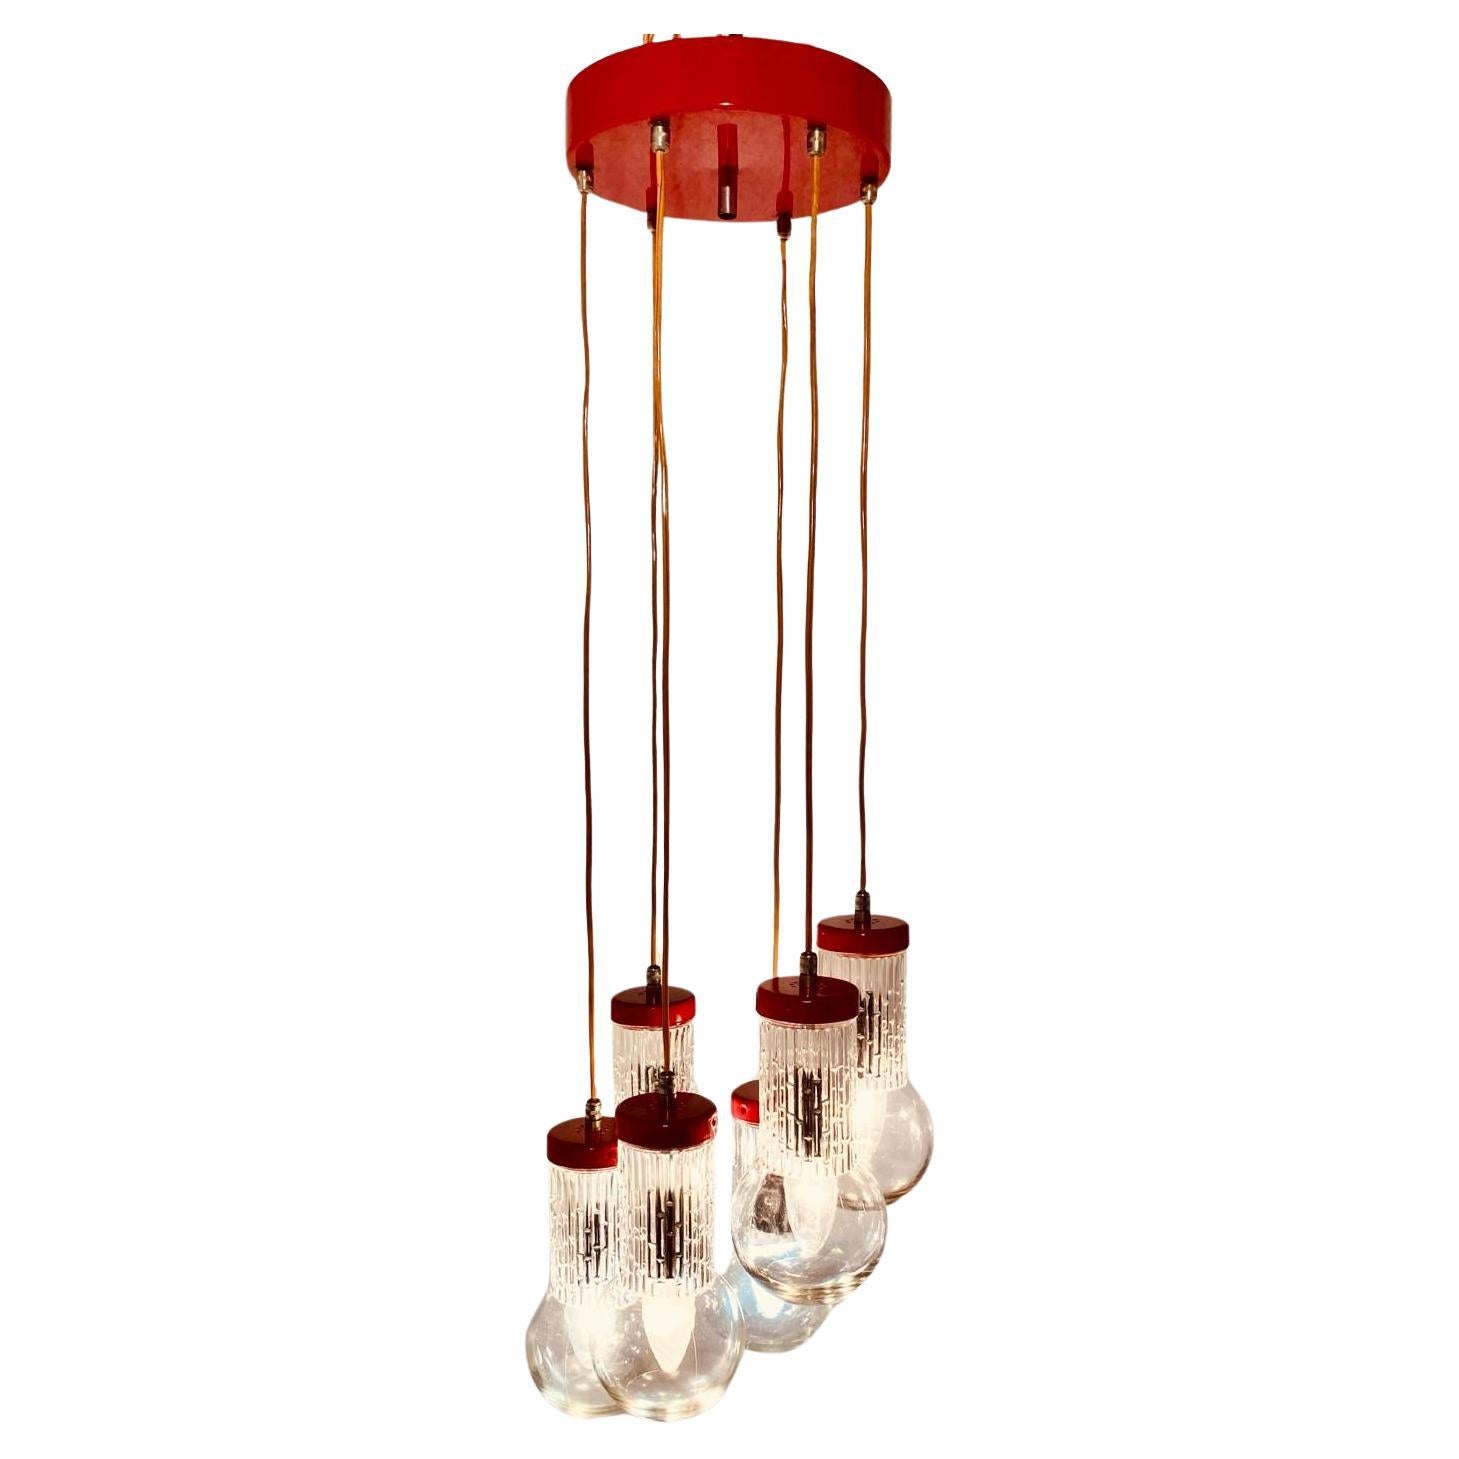 Fünfflammiger roter Vintage-Kronleuchter im Stil von Stilnovo, Italien, 1950er Jahre. Der Kronleuchter besteht aus fünf aufgehängten Leuchten mit geschliffenen Glaskugeln, die über die Drähte der Leuchten mit der oberen Platte verbunden sind. Der